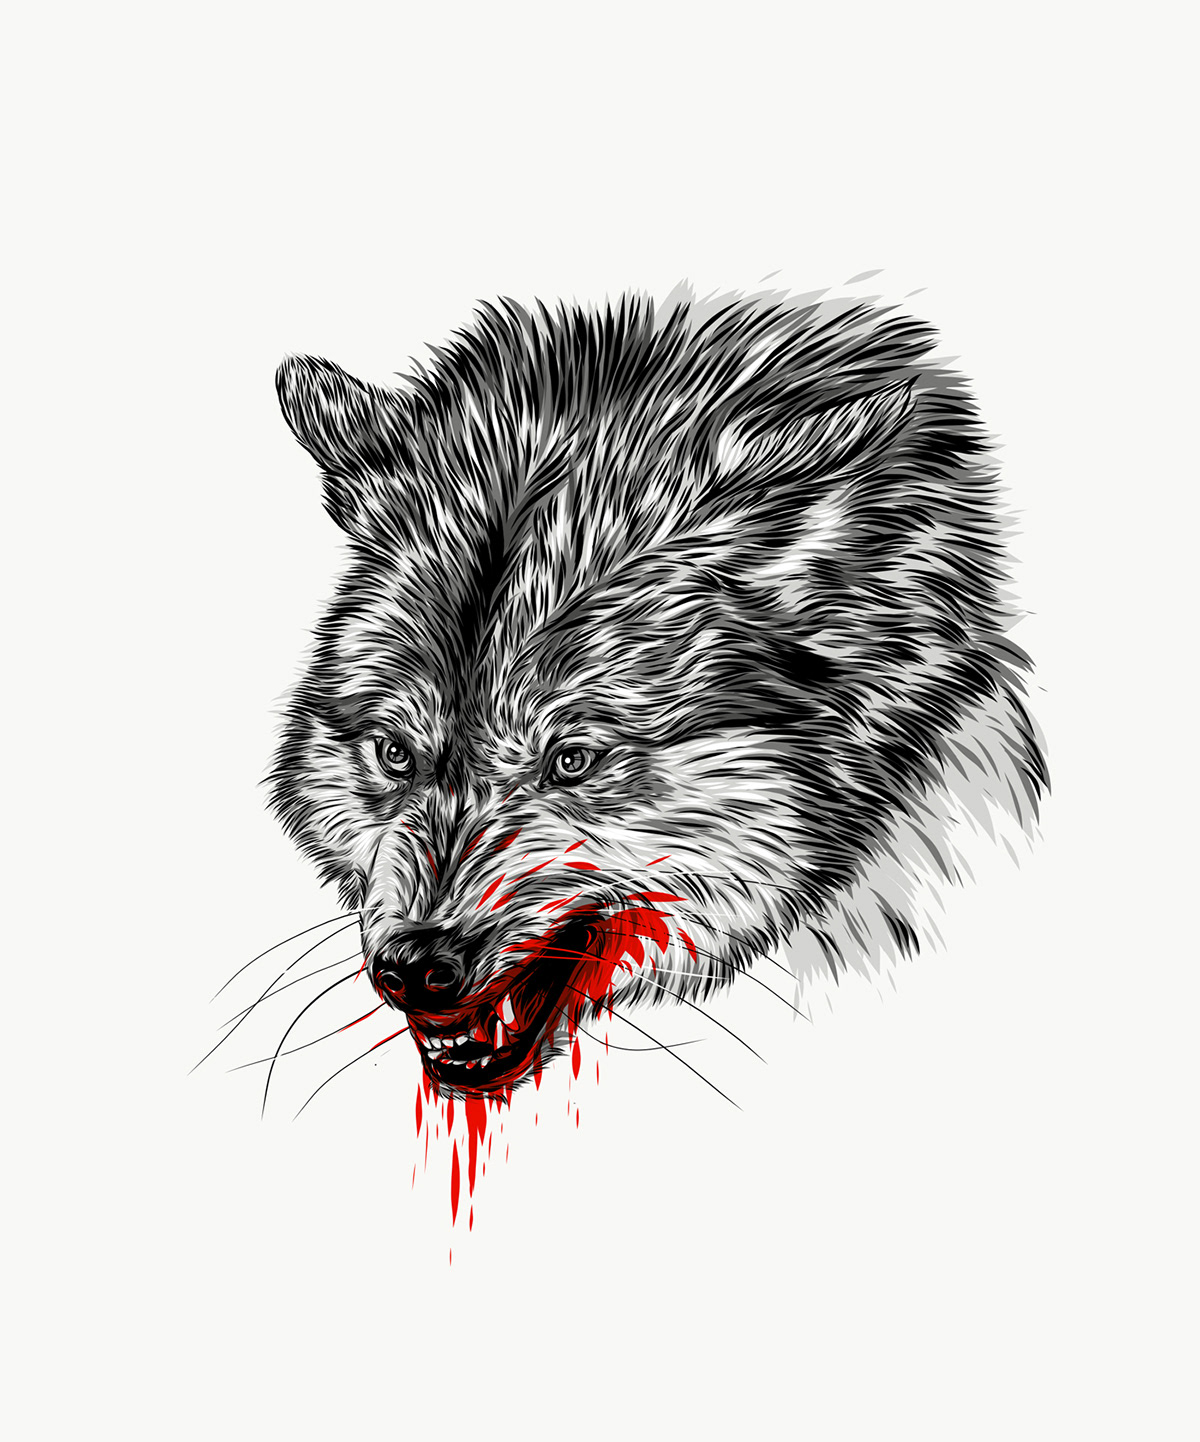 animals blood carnivore forest Fur predator Predators red vector wild